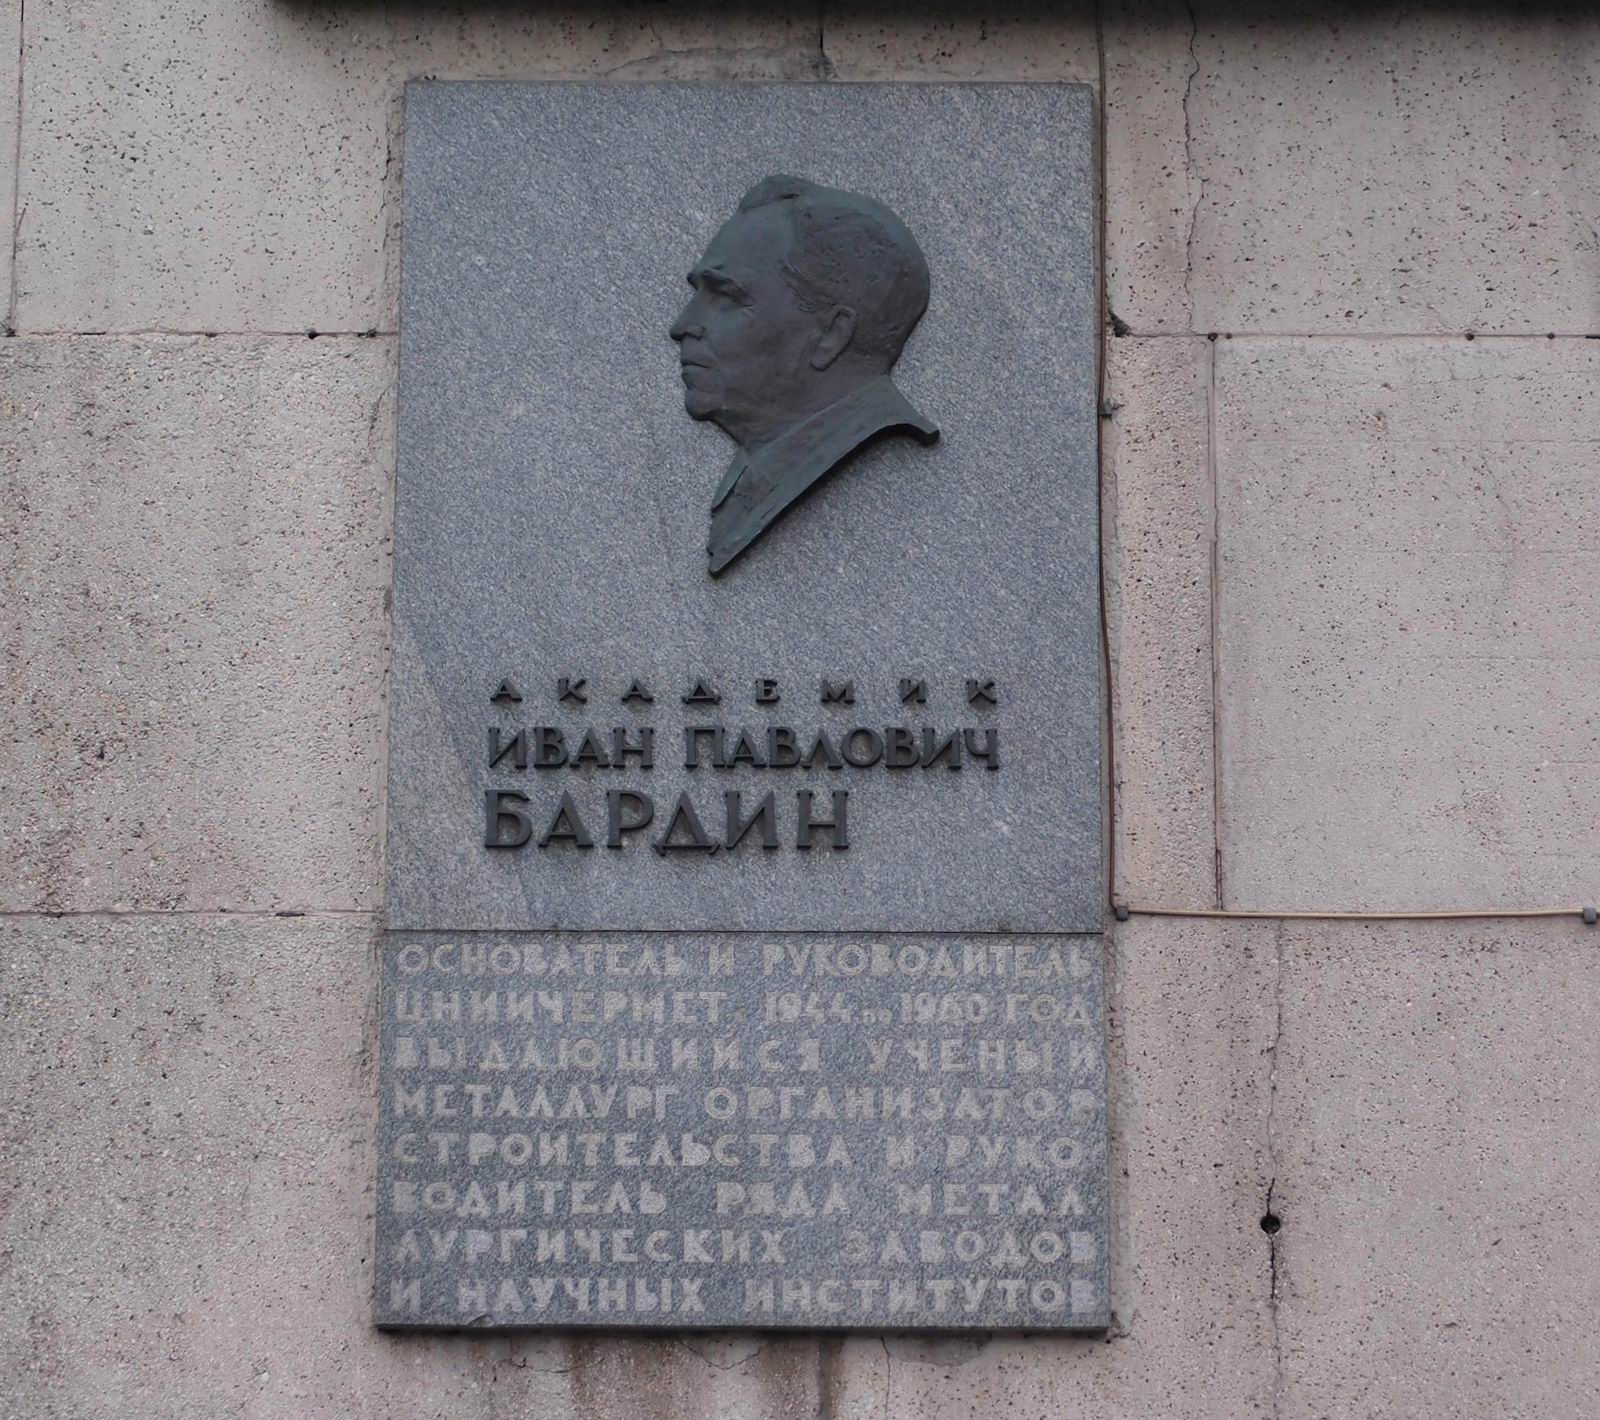 Мемориальная доска Бардину И.П. (1883–1960), ск. Н.Б.Никогосян, арх. В.О.Мунц, на 2-й Бауманской улице, дом 9/23.